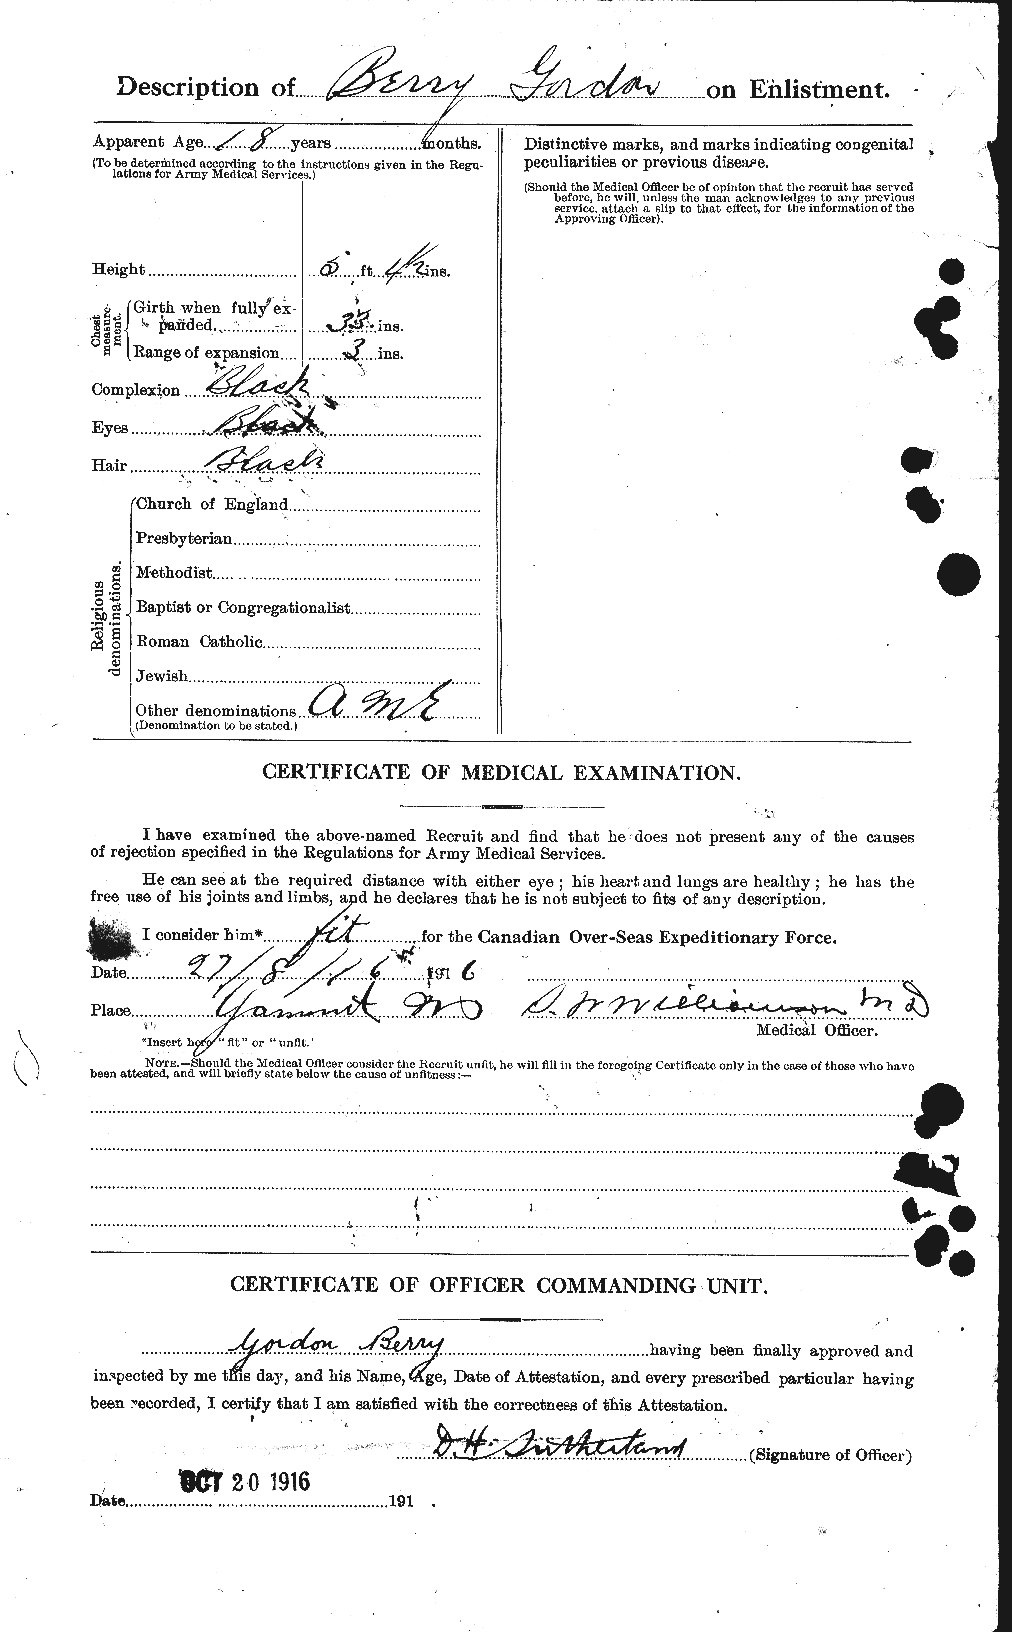 Dossiers du Personnel de la Première Guerre mondiale - CEC 240903b